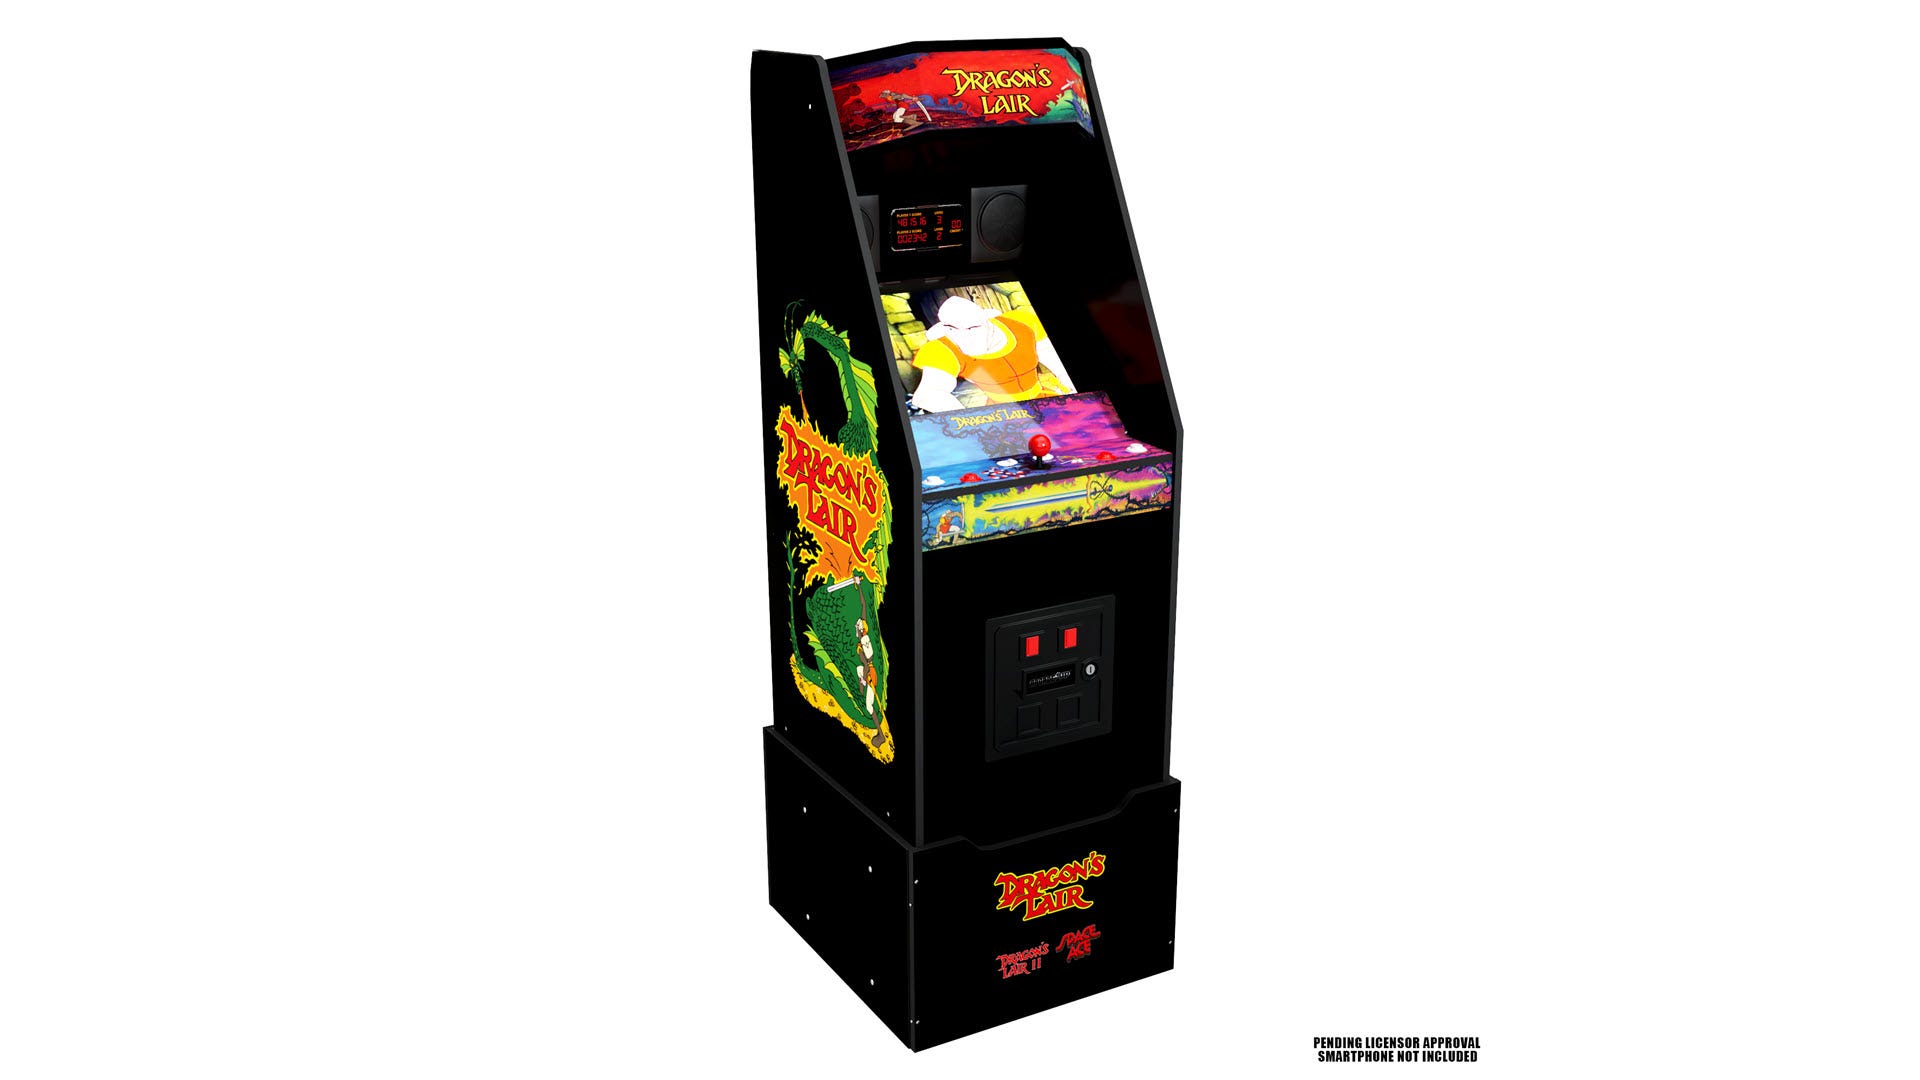 Một cỗ máy arcade 'Dragon's Lair' có kích thước đầy đủ.